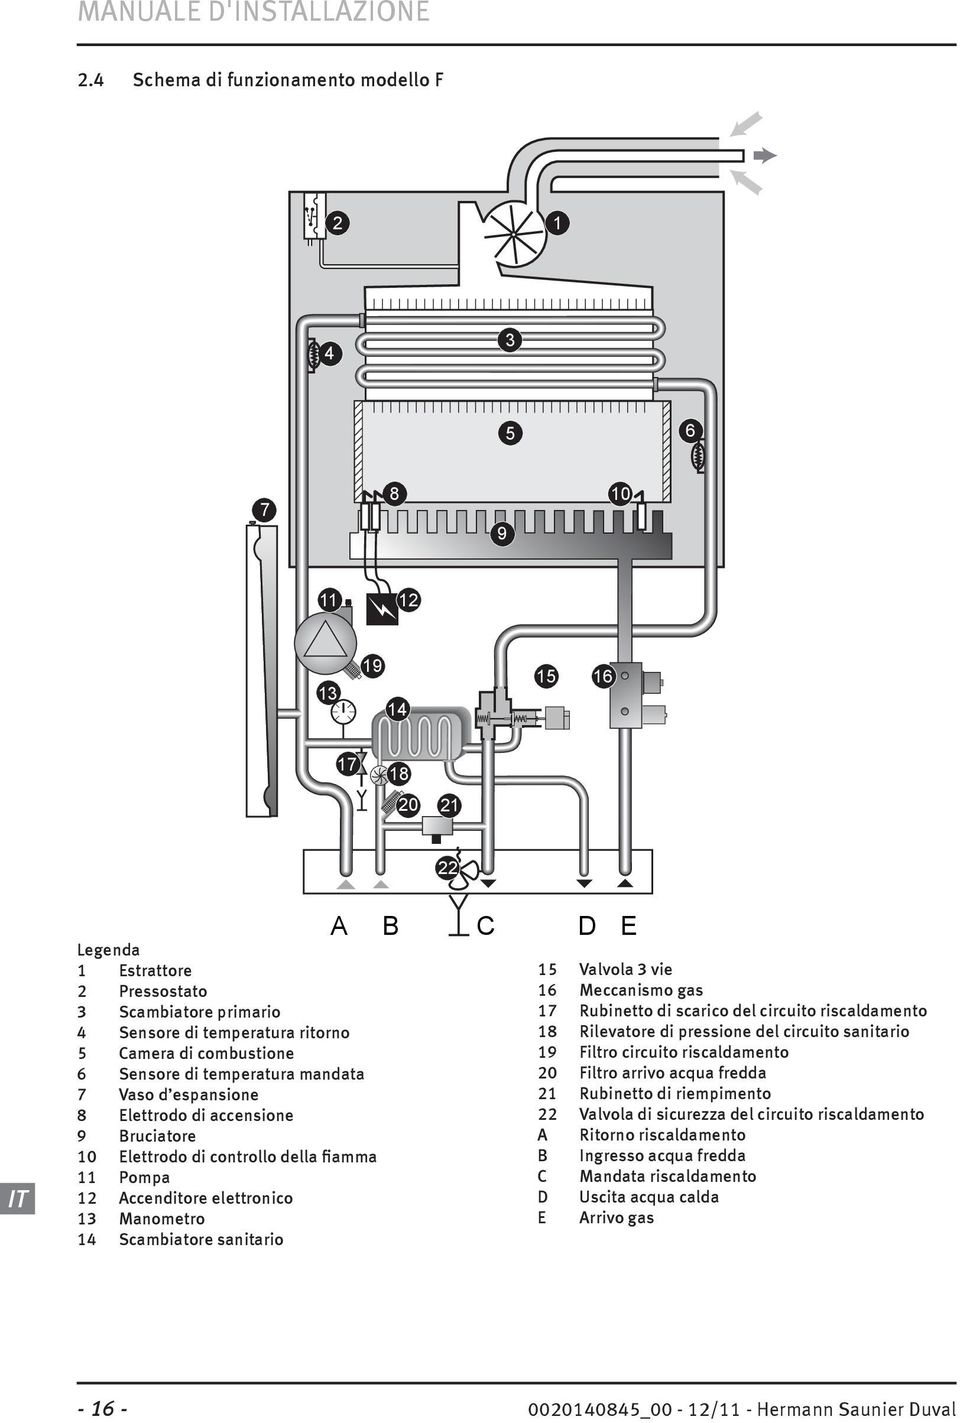 Scambiatore sanitario A B C D E 15 Valvola 3 vie 16 Meccanismo gas 17 Rubinetto di scarico del circuito riscaldamento 18 Rilevatore di pressione del circuito sanitario 19 Filtro circuito